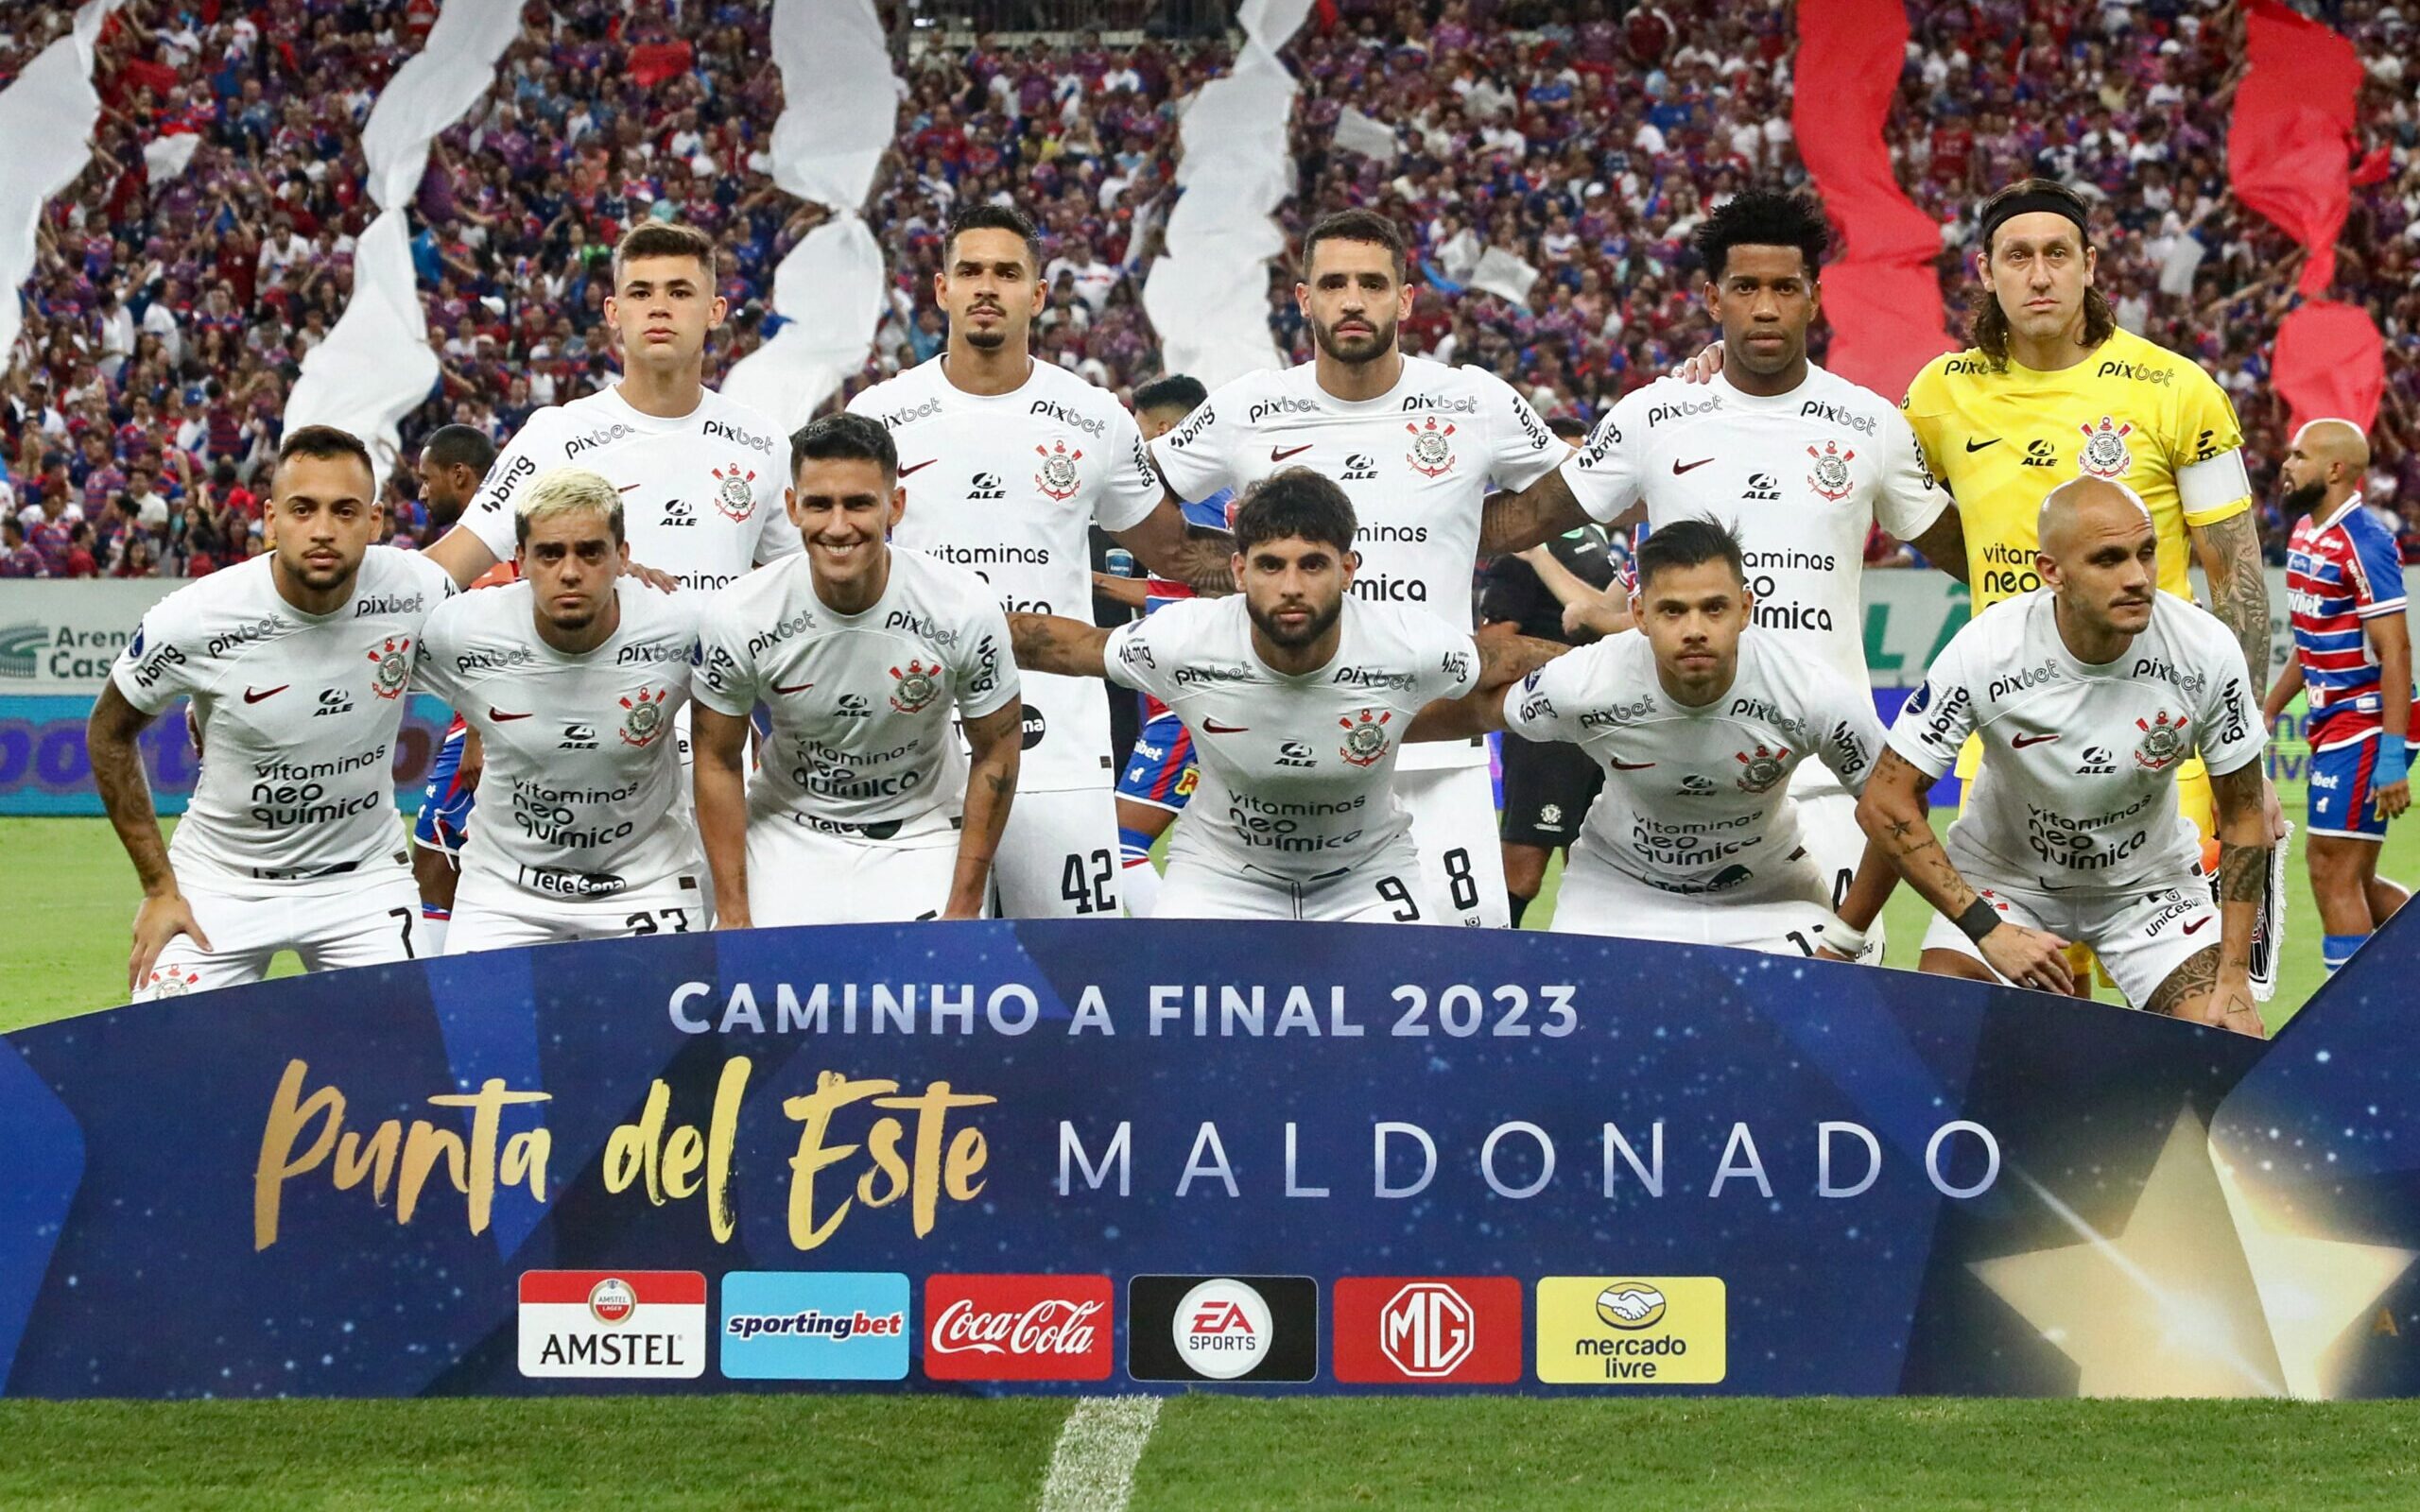 Jogos do Corinthians no Brasileirão: Veja a tabela do Timão na Série A